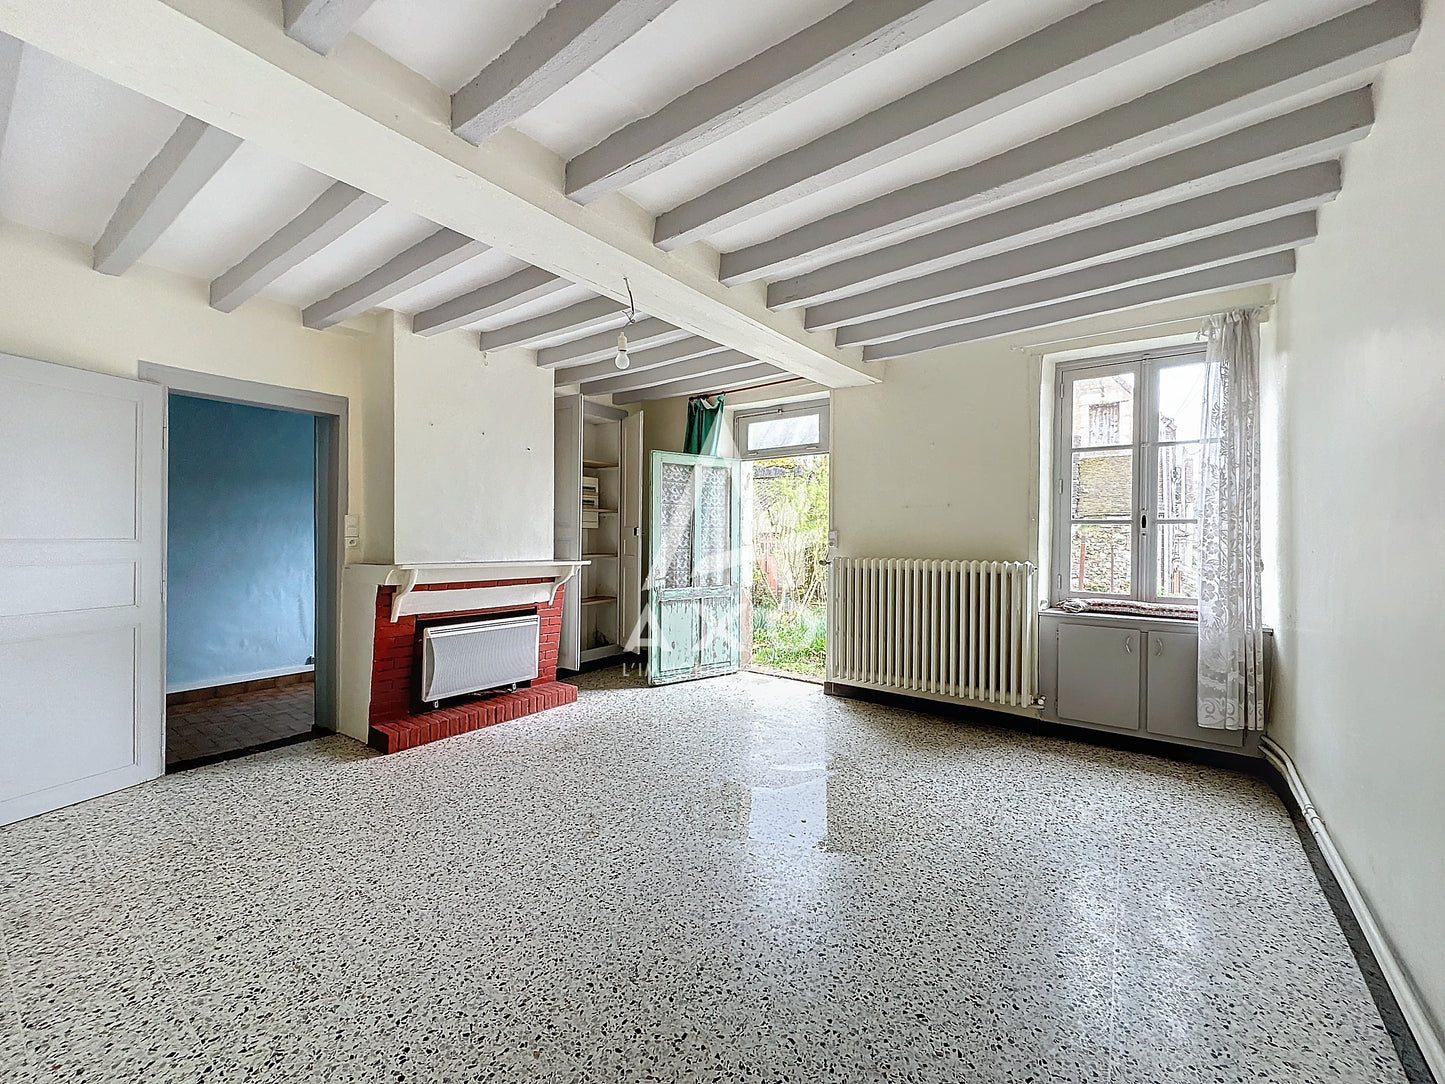 Maison Ancienne à rénover 4 pièces - 87m² - Sablons-sur-Huisnes (61110)